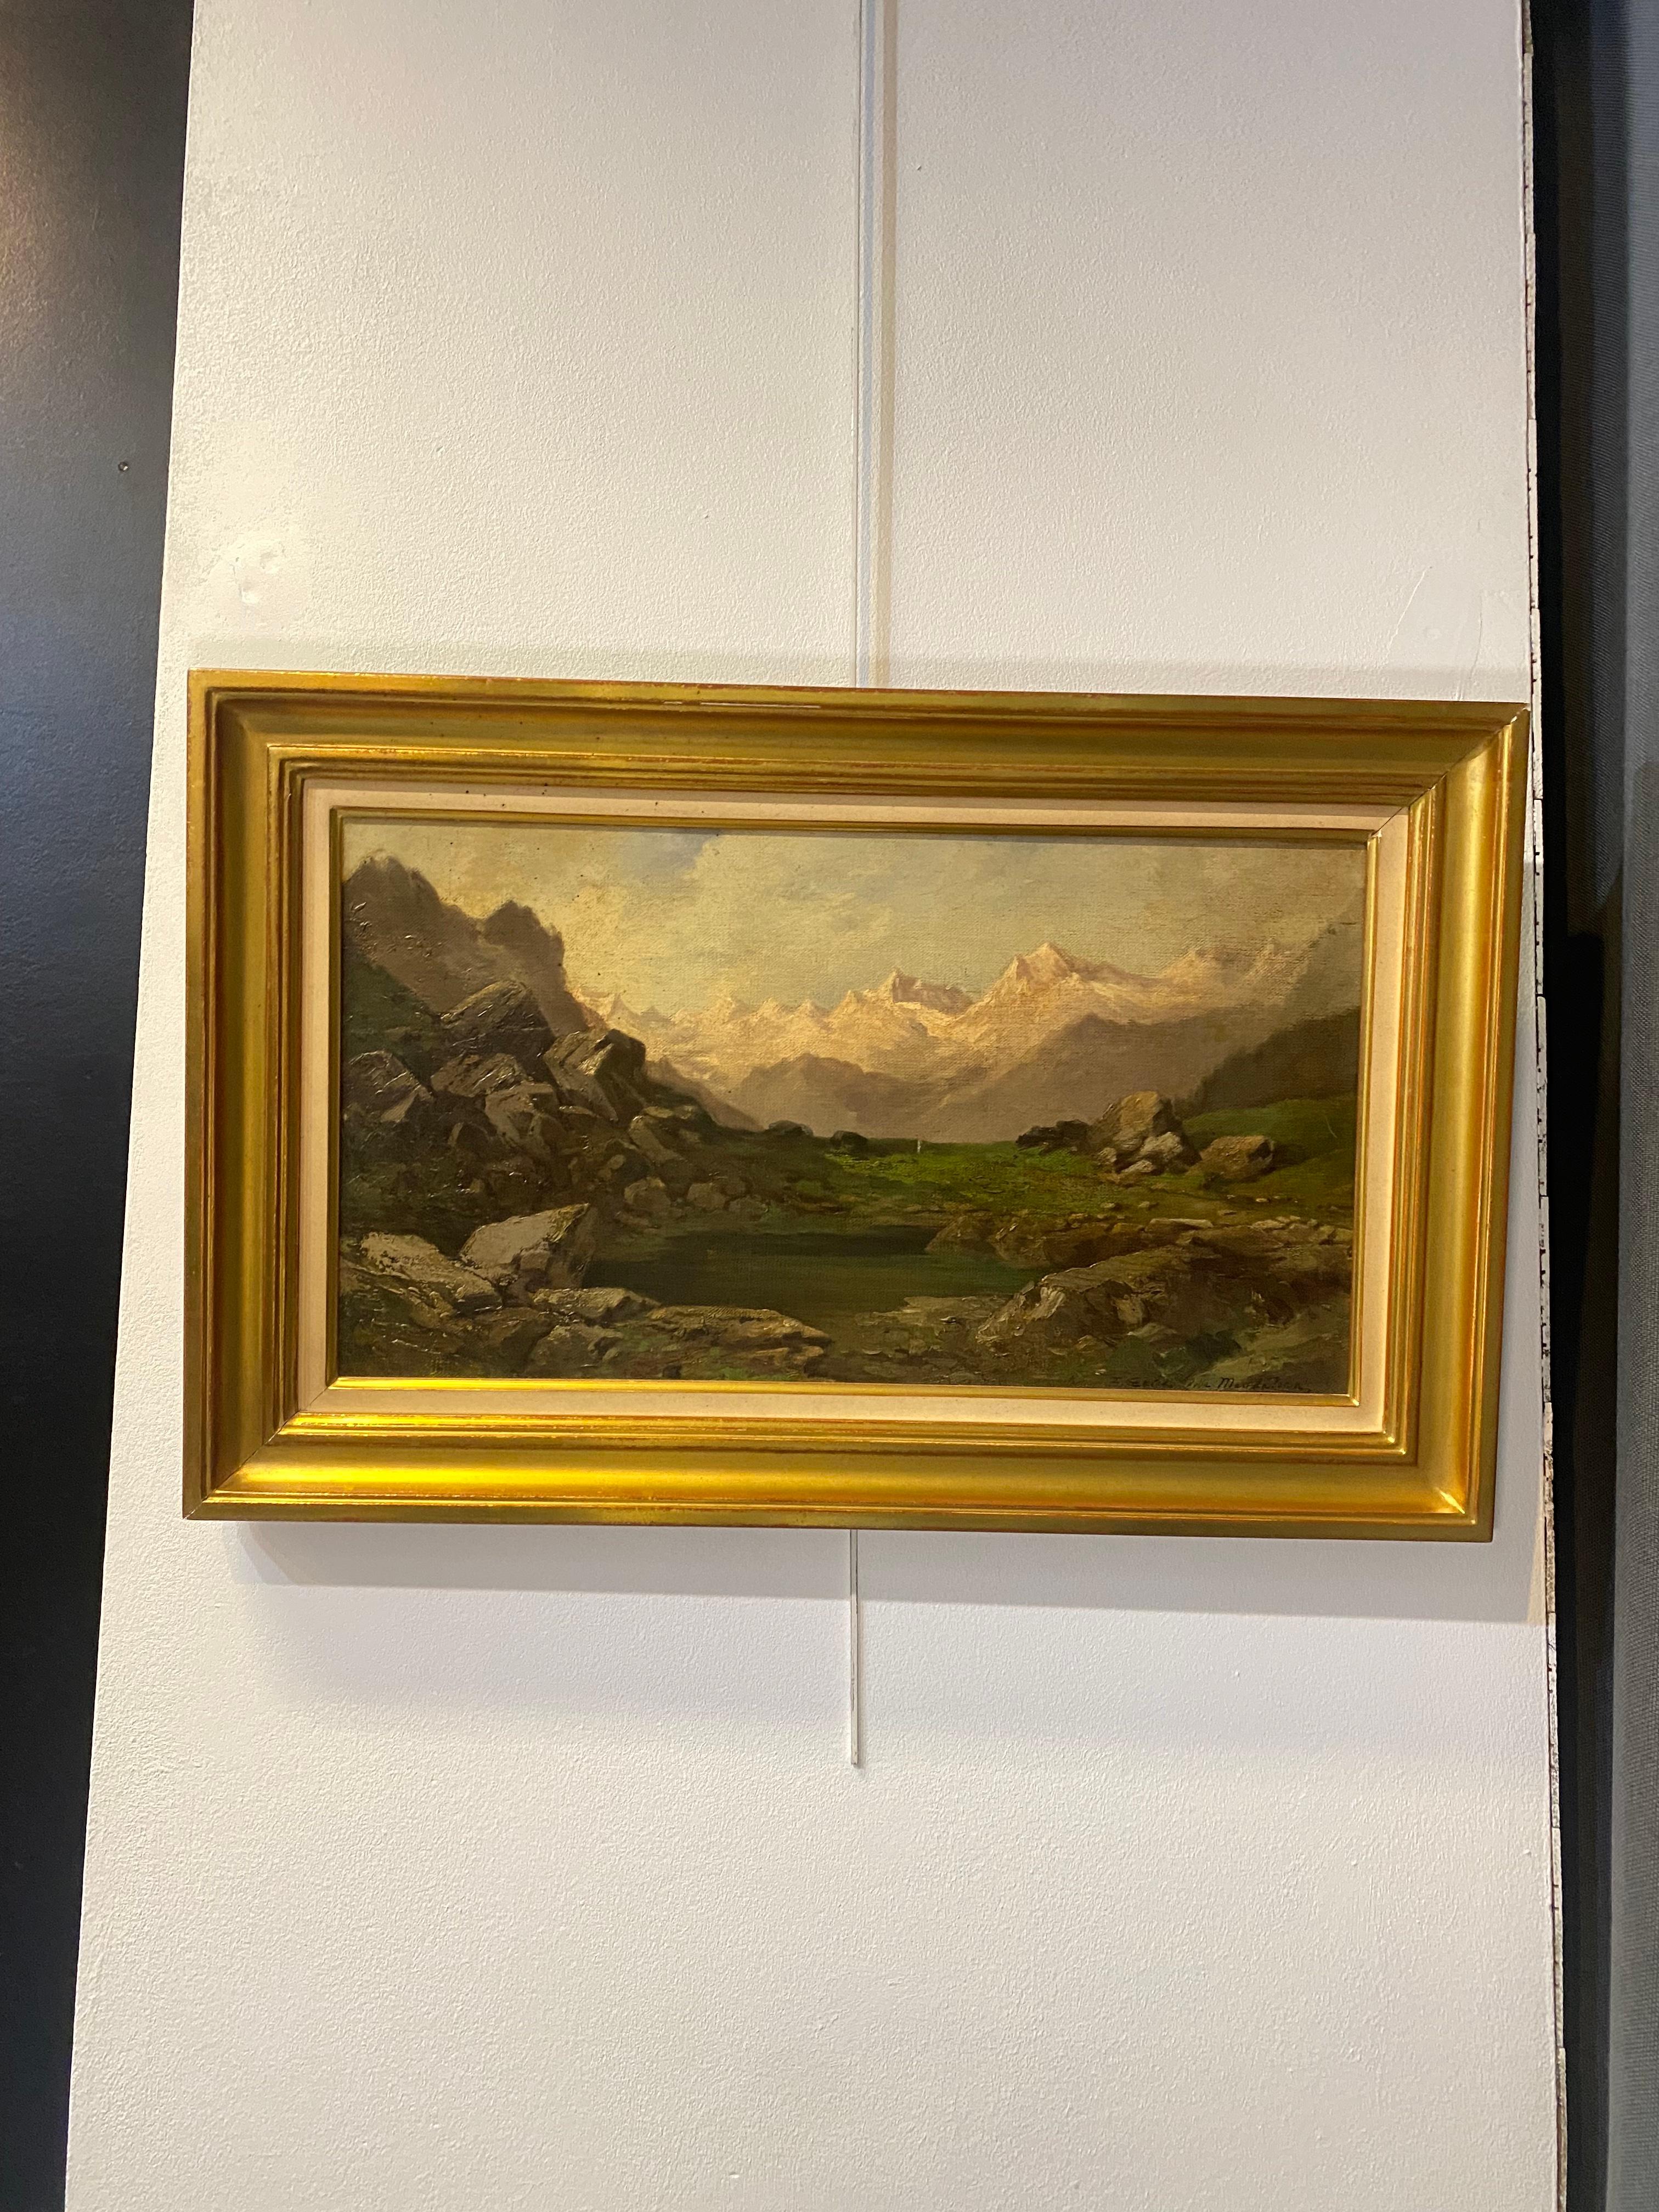 Paysage de montagne suisse - Huile sur toile 35x62 cm - Moderne Painting par Unknown